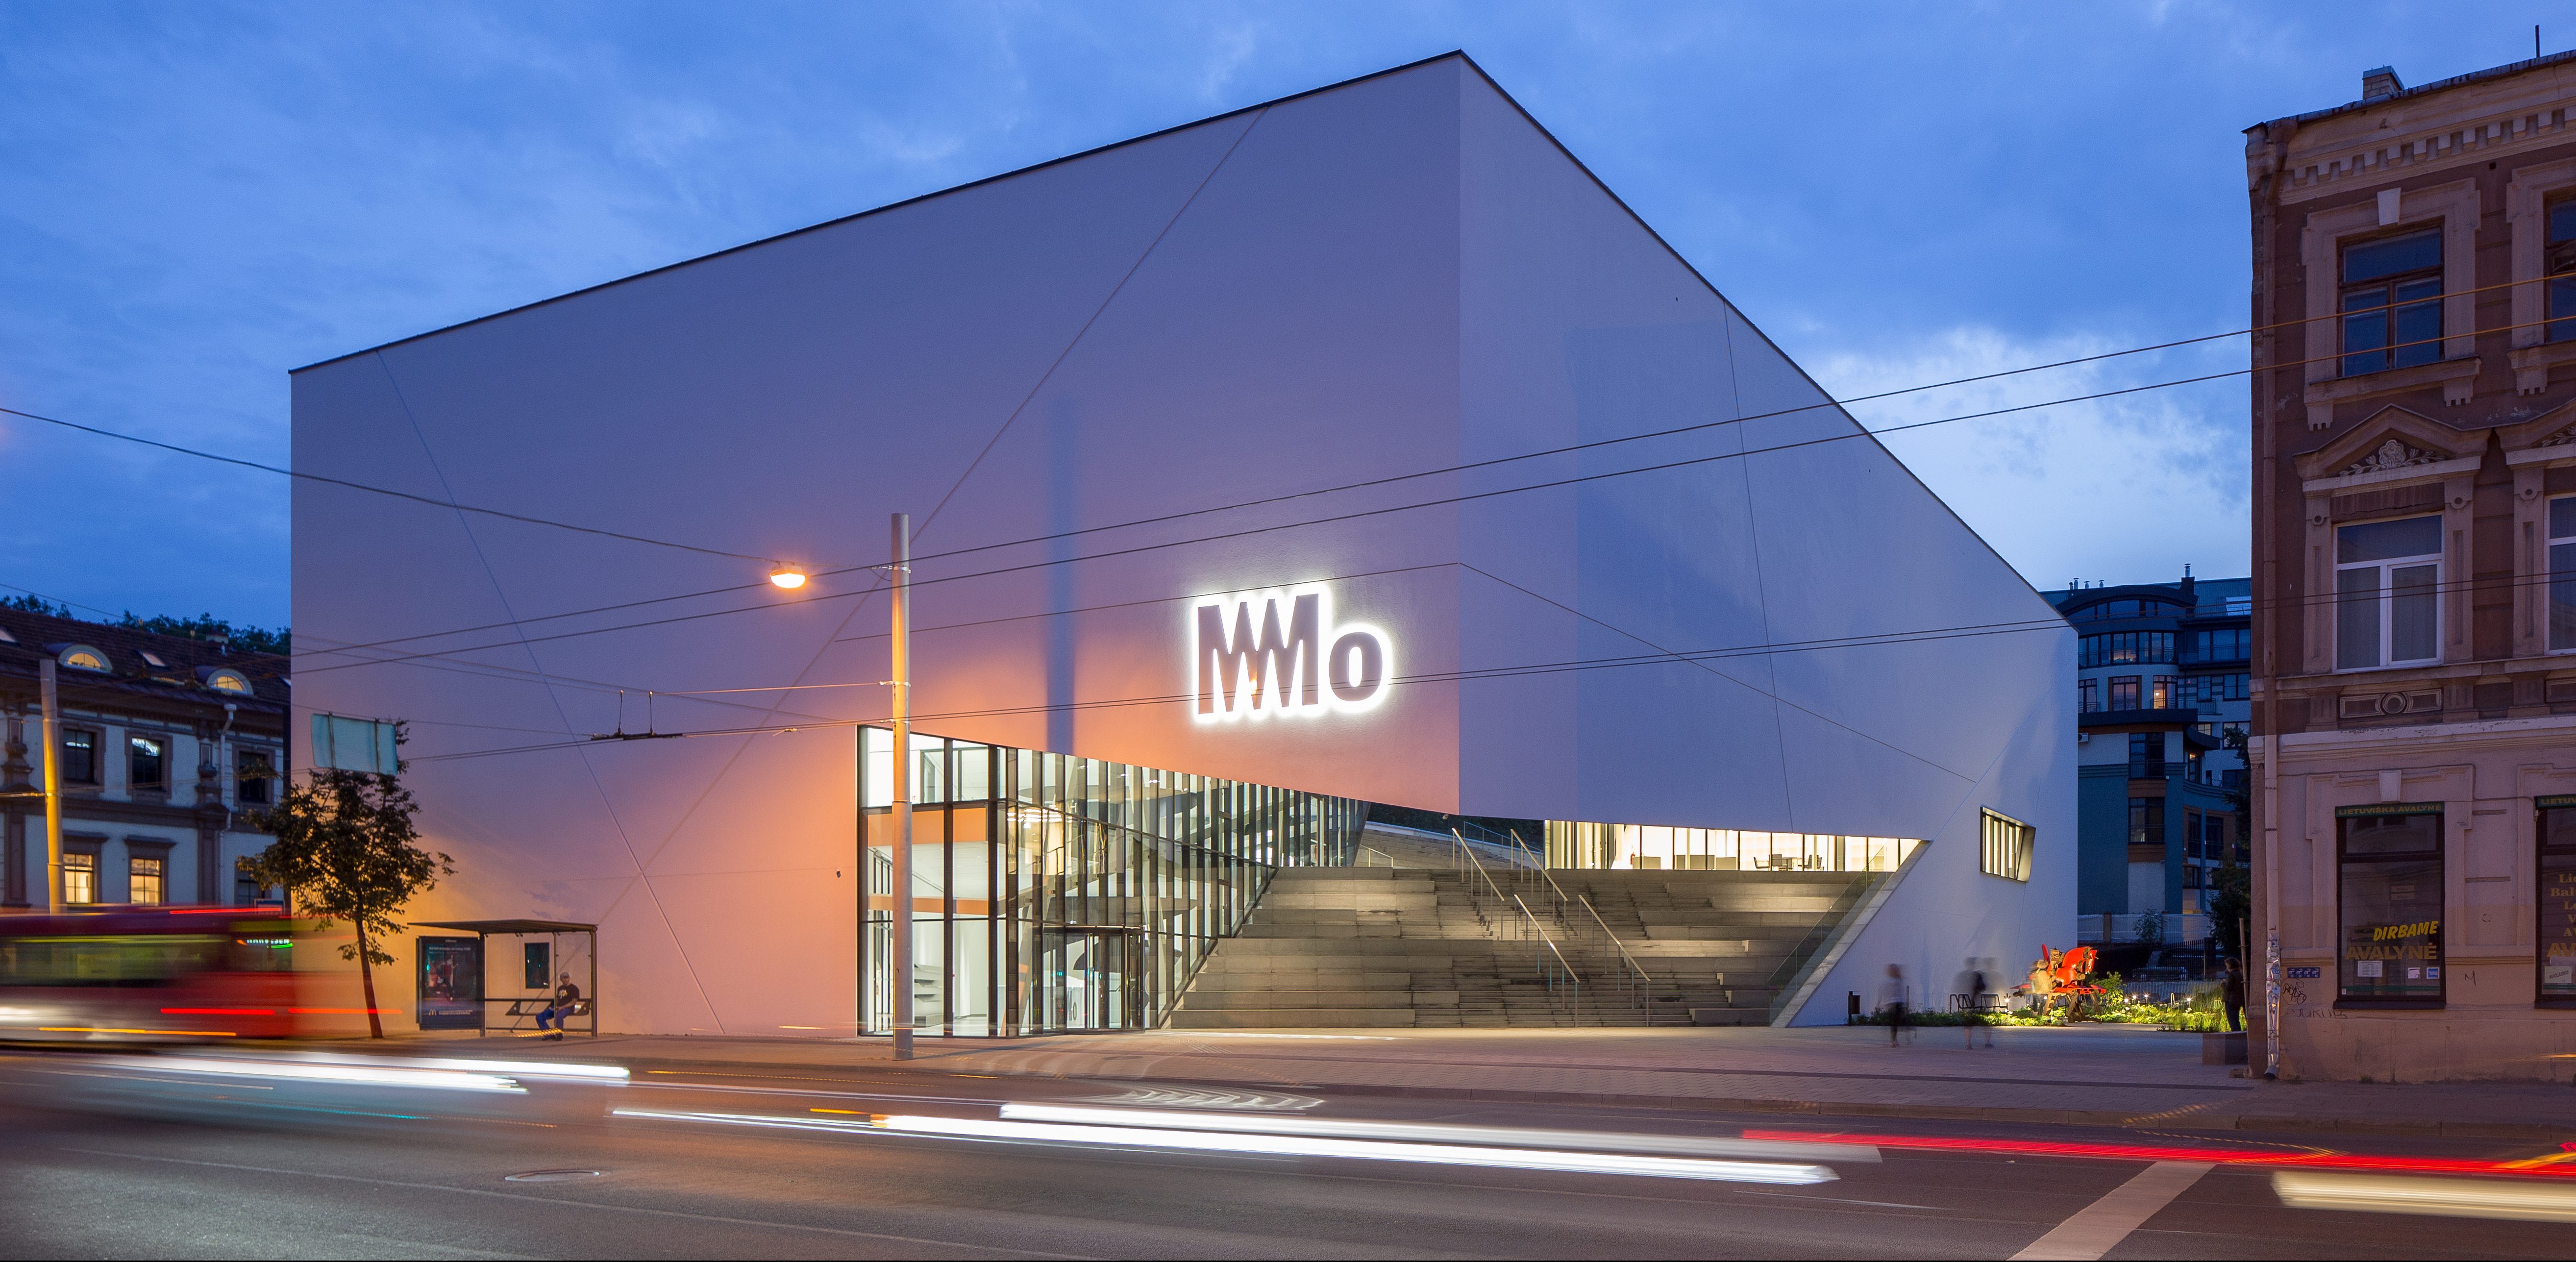 Baigta išskirtiniais architektūriniais sprendimais garsėjančio “MO muziejaus” pastato statyba